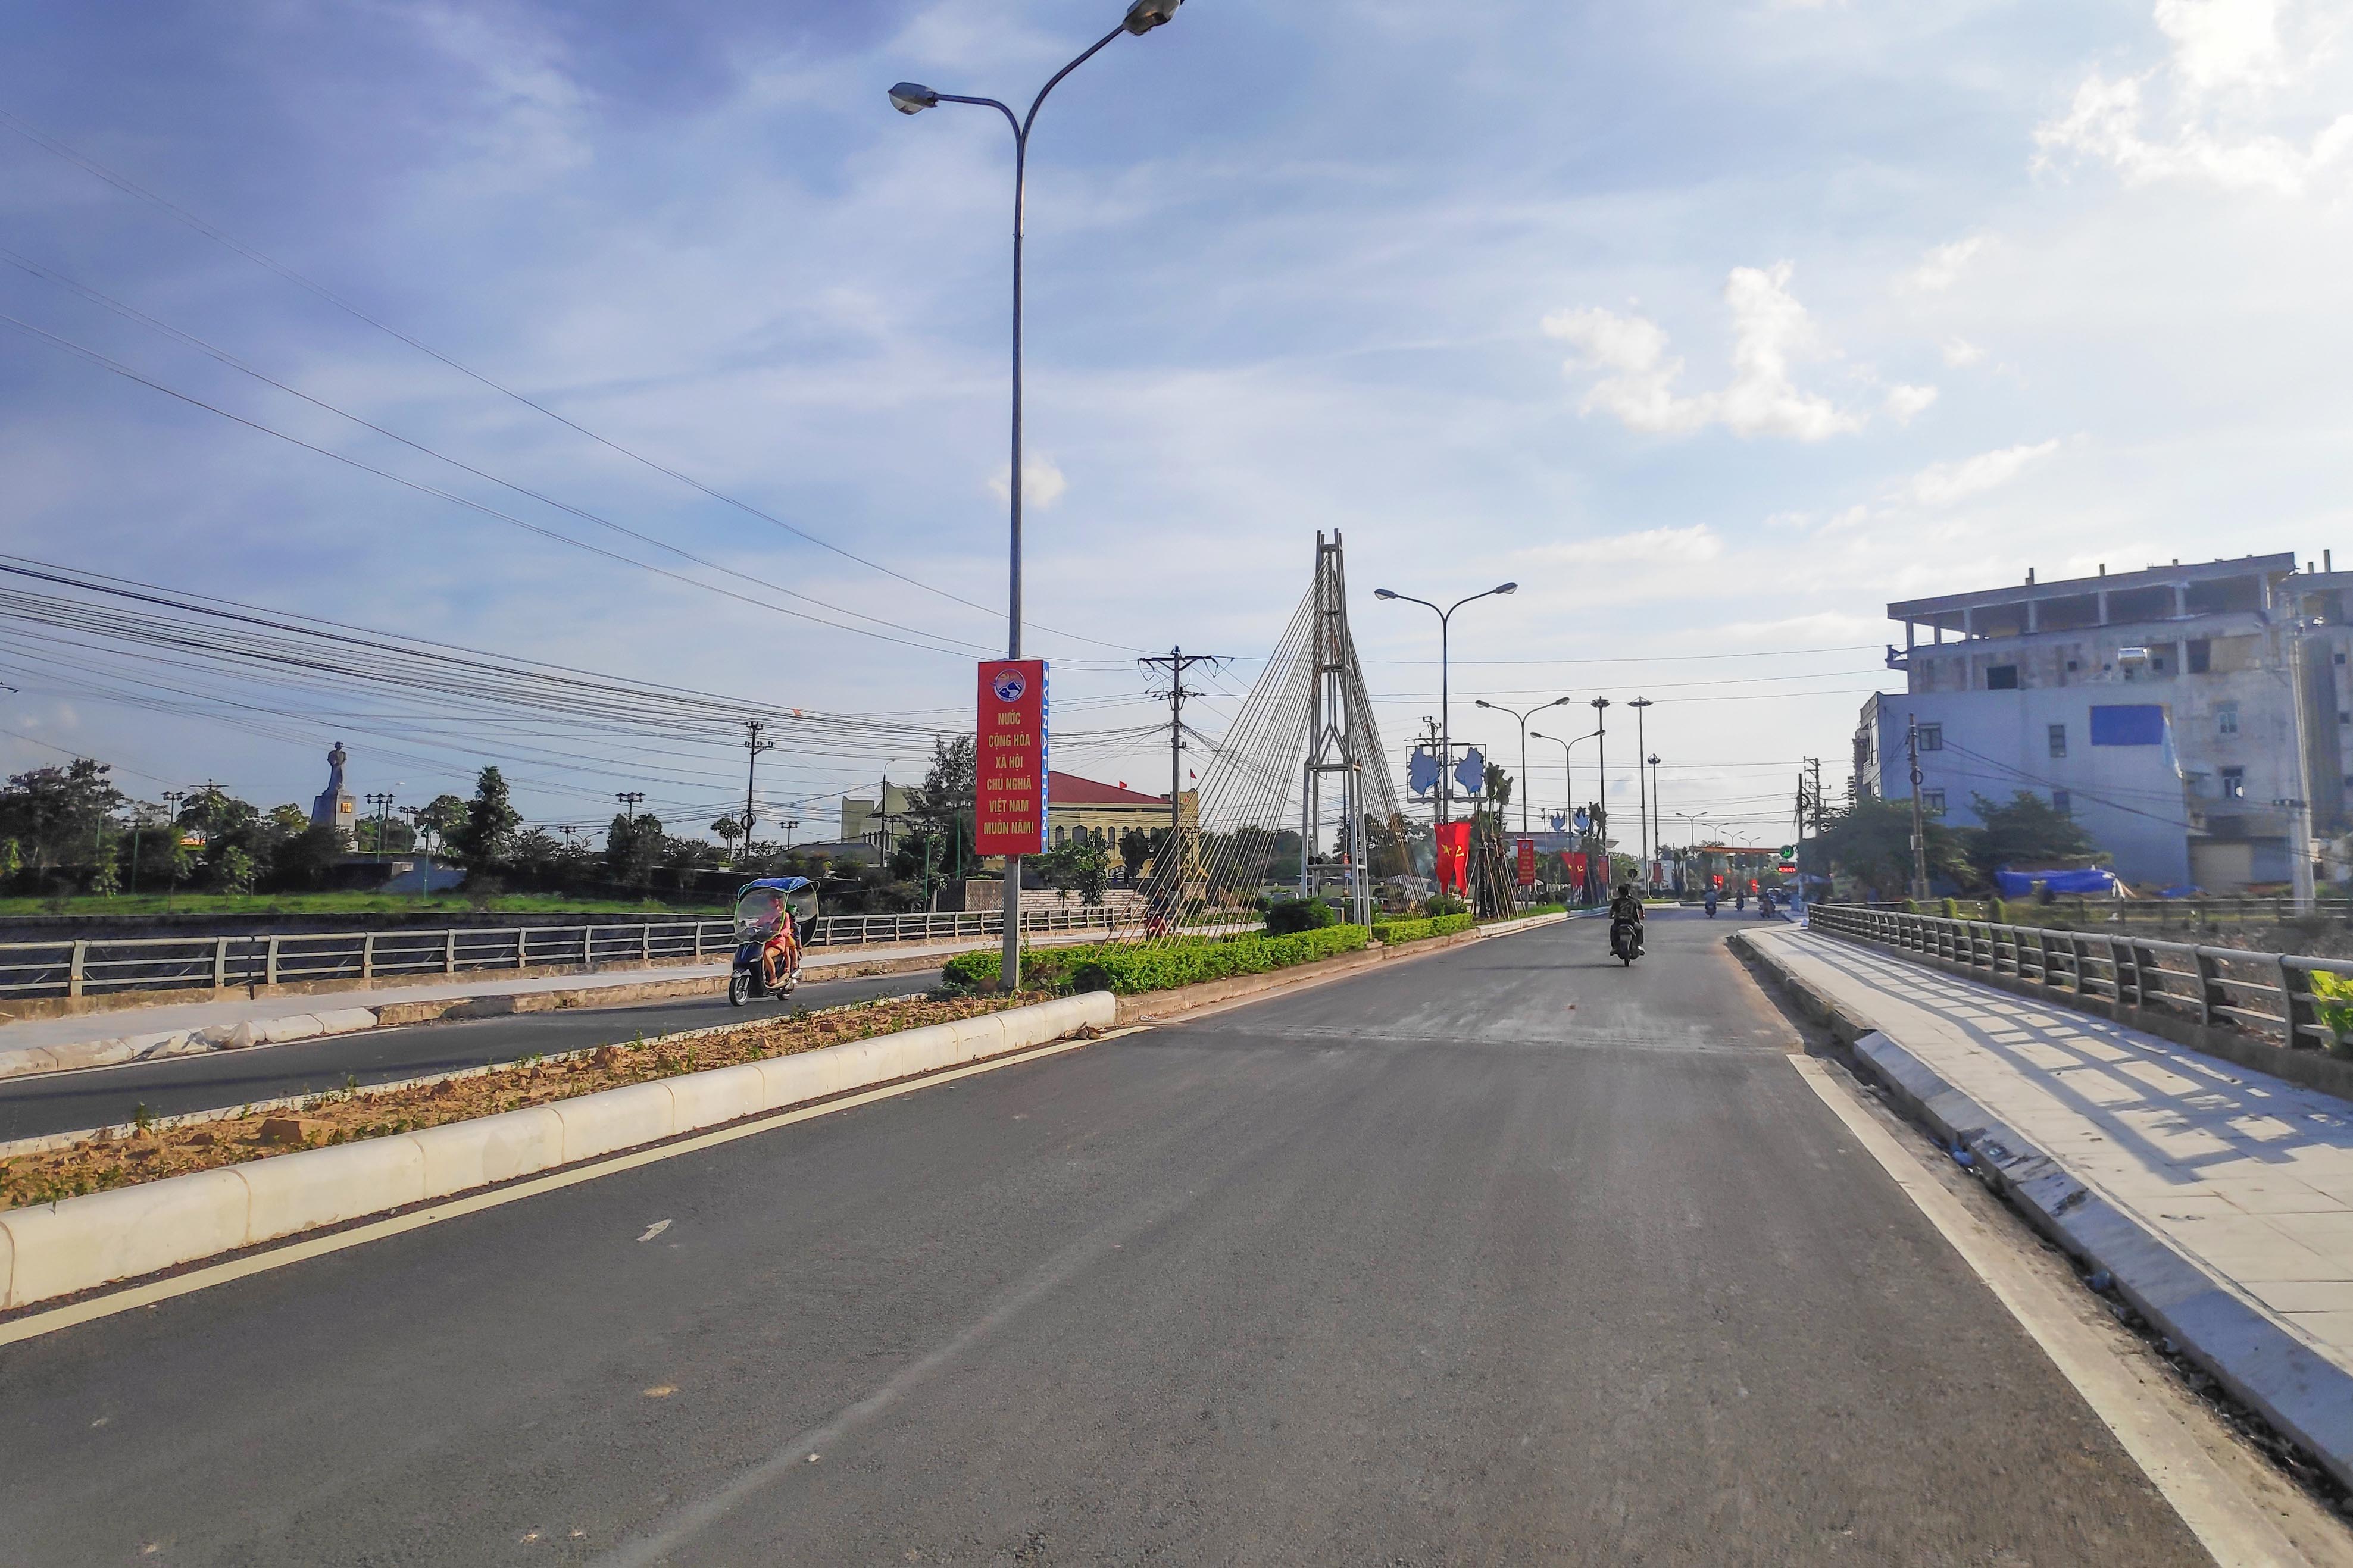 Hệ thống đường giao thông được đầu tư đồng bộ, đáp ứng tốt cho sản xuất, sinh hoạt của người dân các xã, thị trấn của huyện Đầm Hà.